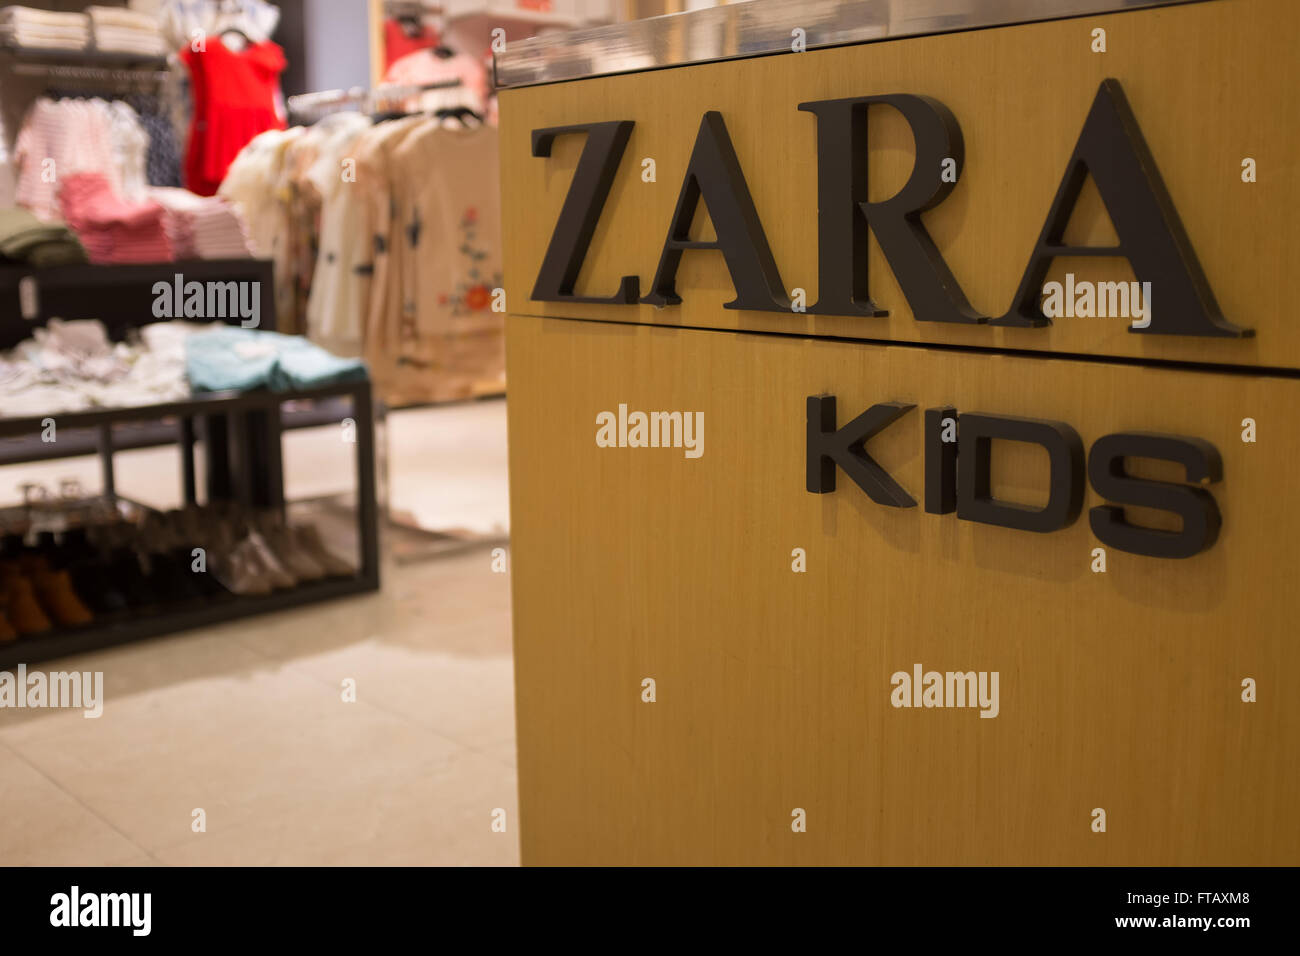 Zara kids shop immagini e fotografie stock ad alta risoluzione - Alamy